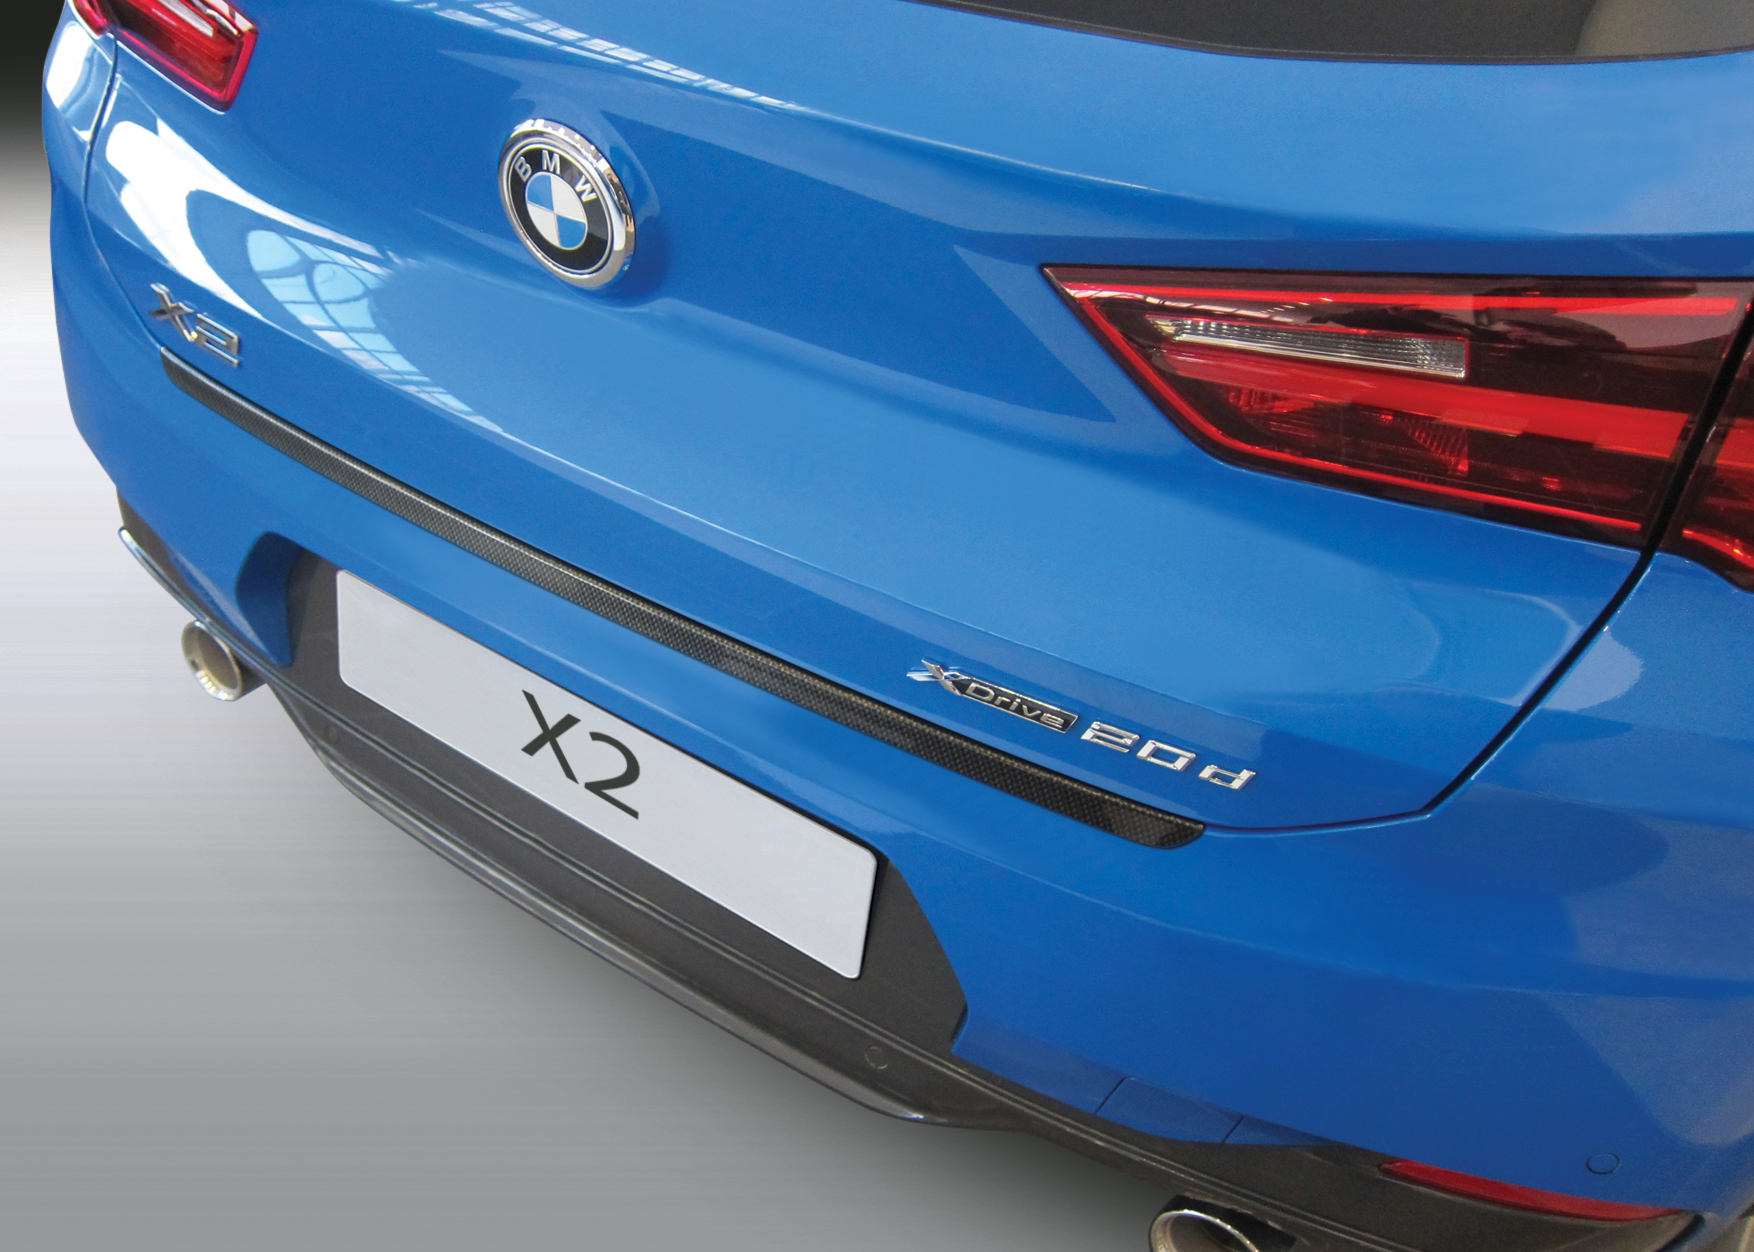 Ladekantenschutz für BMW X2 - Schutz für die Ladekante Ihres Fahrzeuges